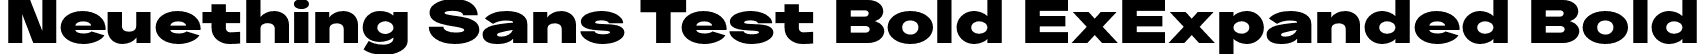 Neuething Sans Test Bold ExExpanded Bold font - NeuethingVariableTest-BlackExtraExpanded.otf